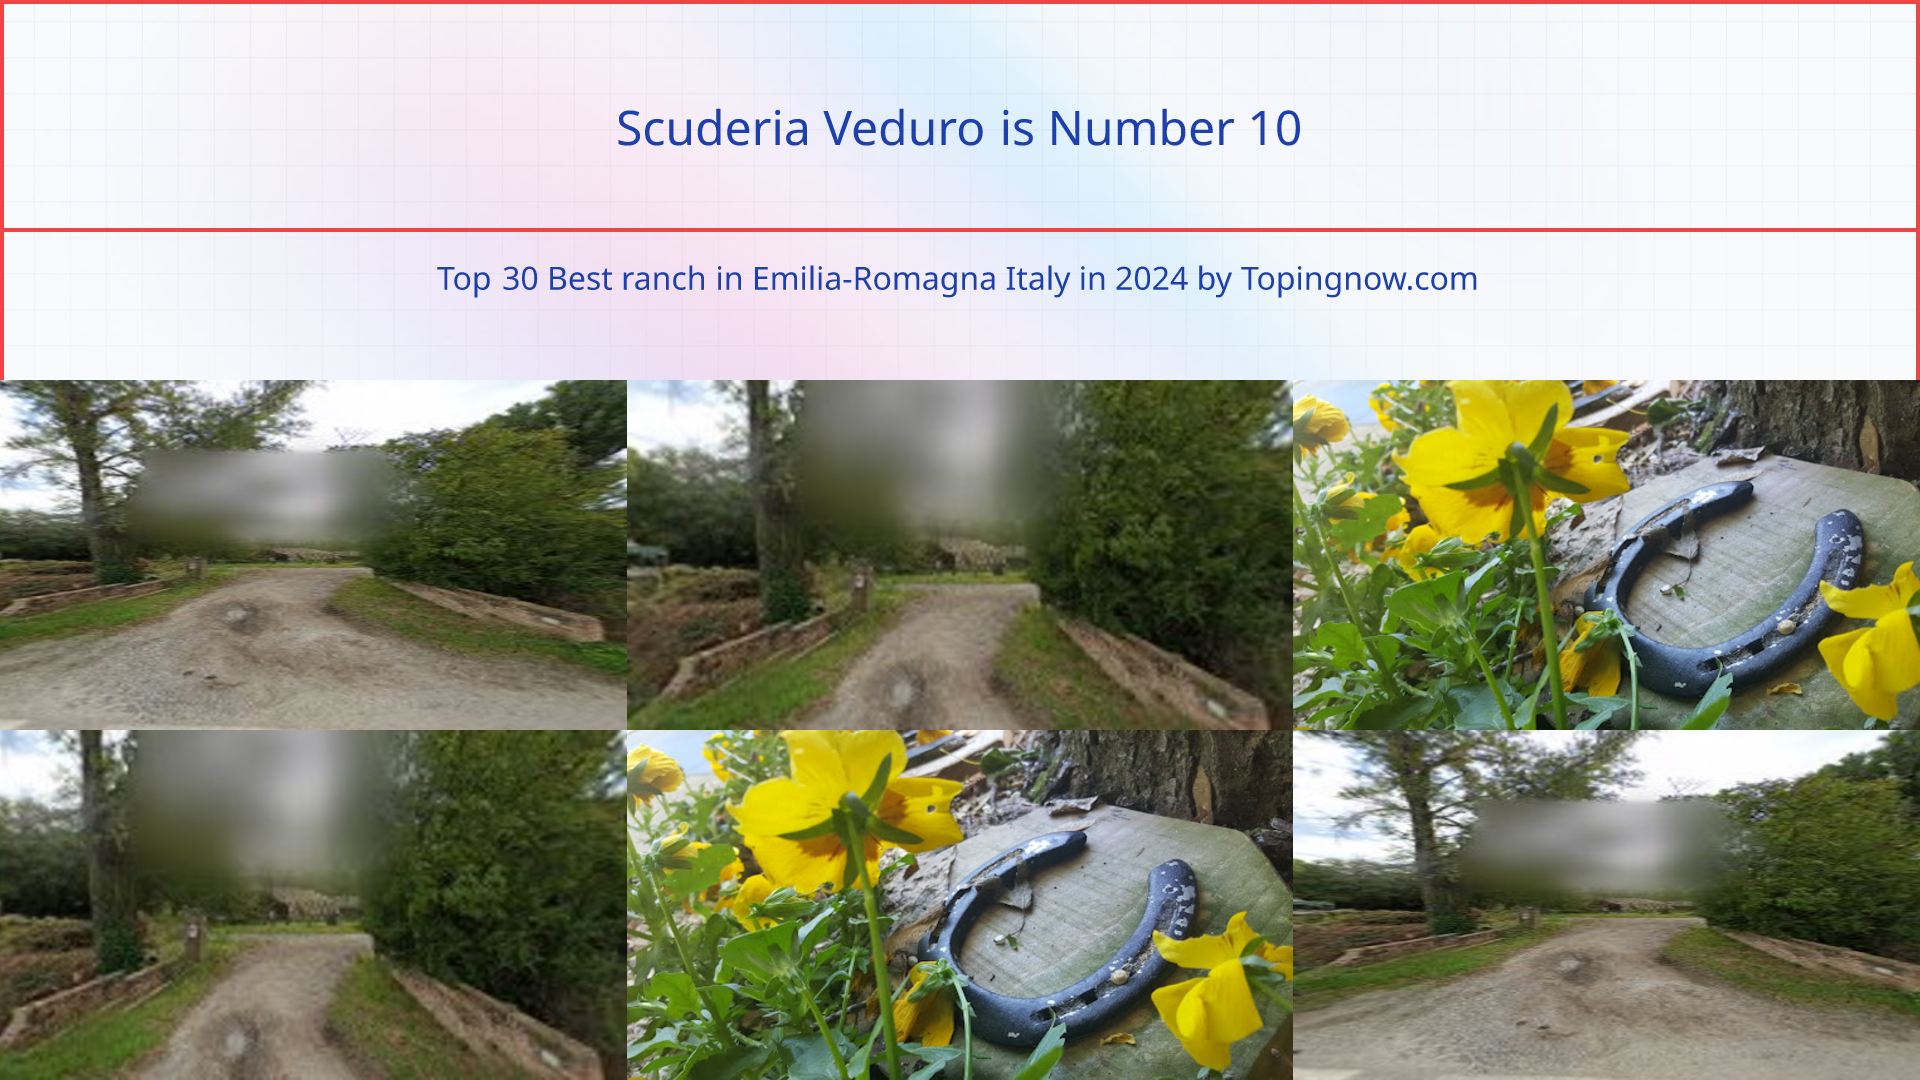 Scuderia Veduro: Top 30 Best ranch in Emilia-Romagna Italy in 2024